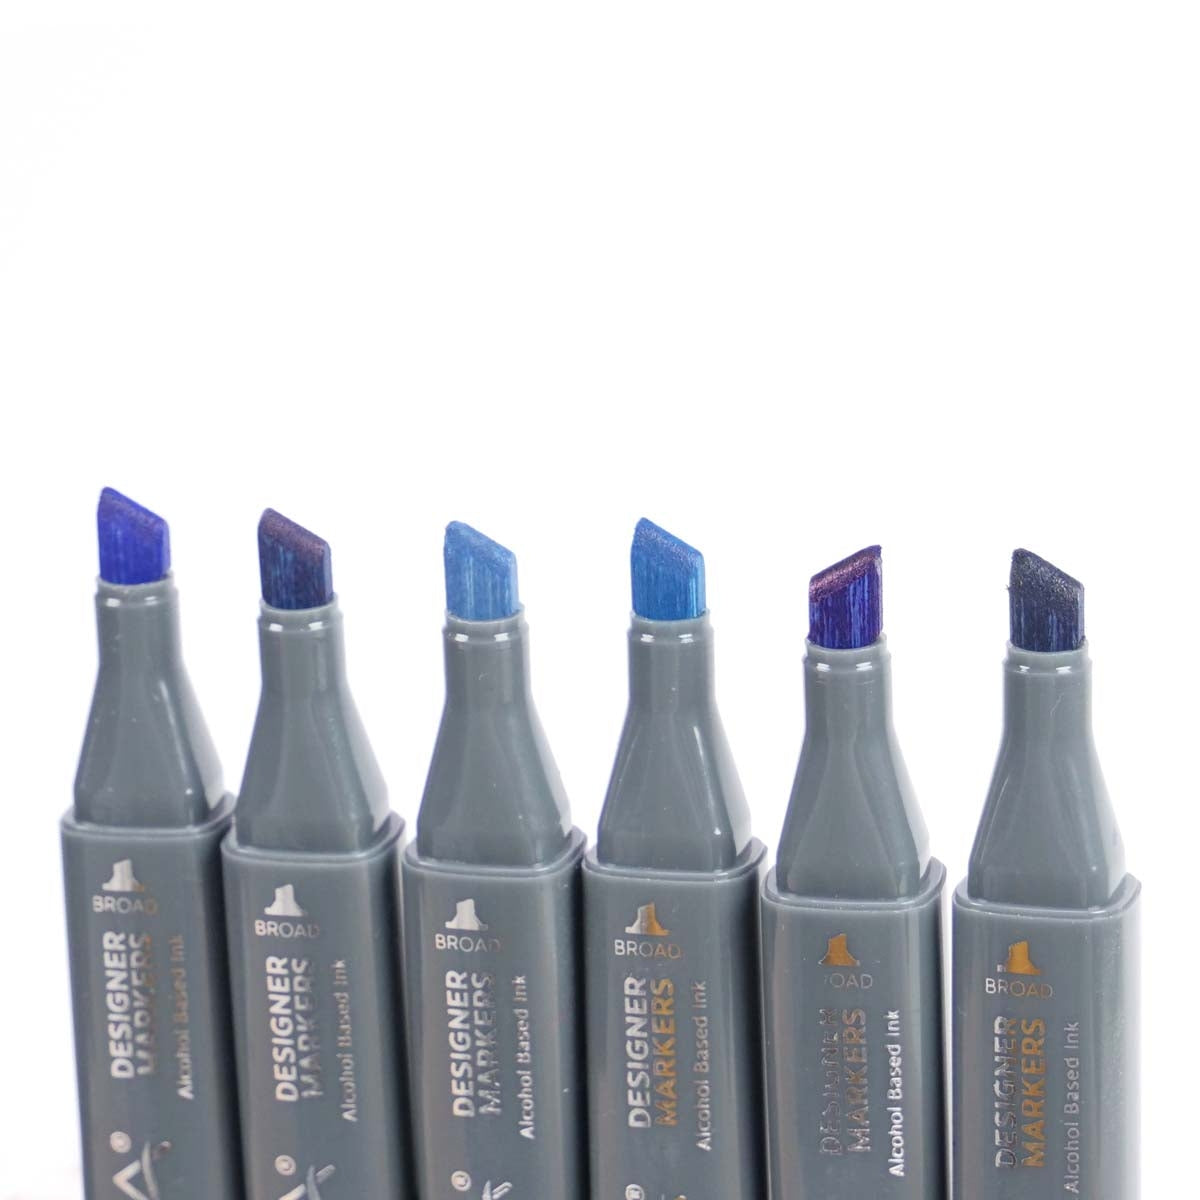 Nova - Designer Markers - Dual Tip - Alcohol Based - 6 Pack - Blues